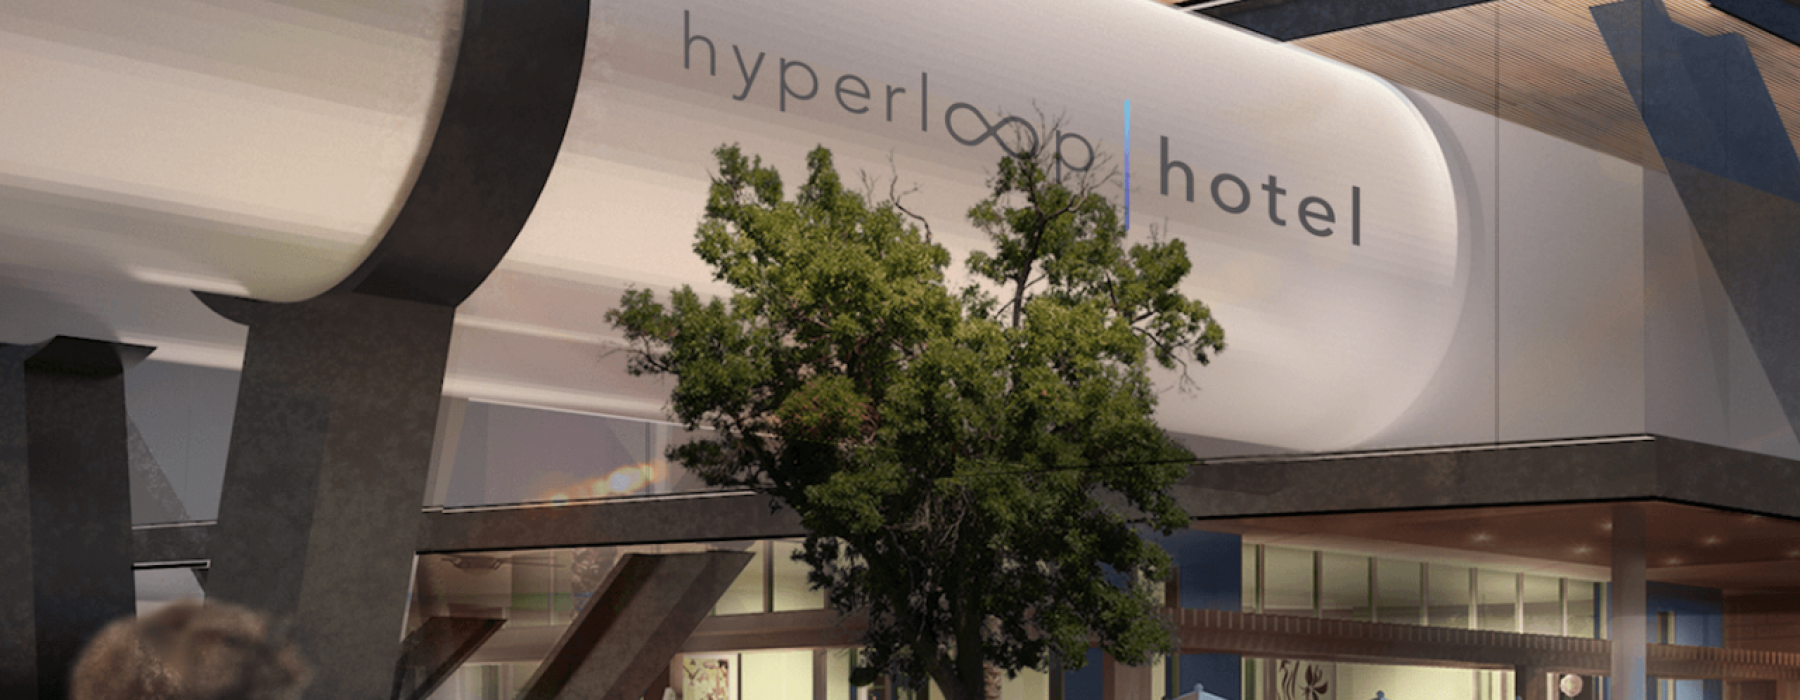 Hyperloop Hotel Concept